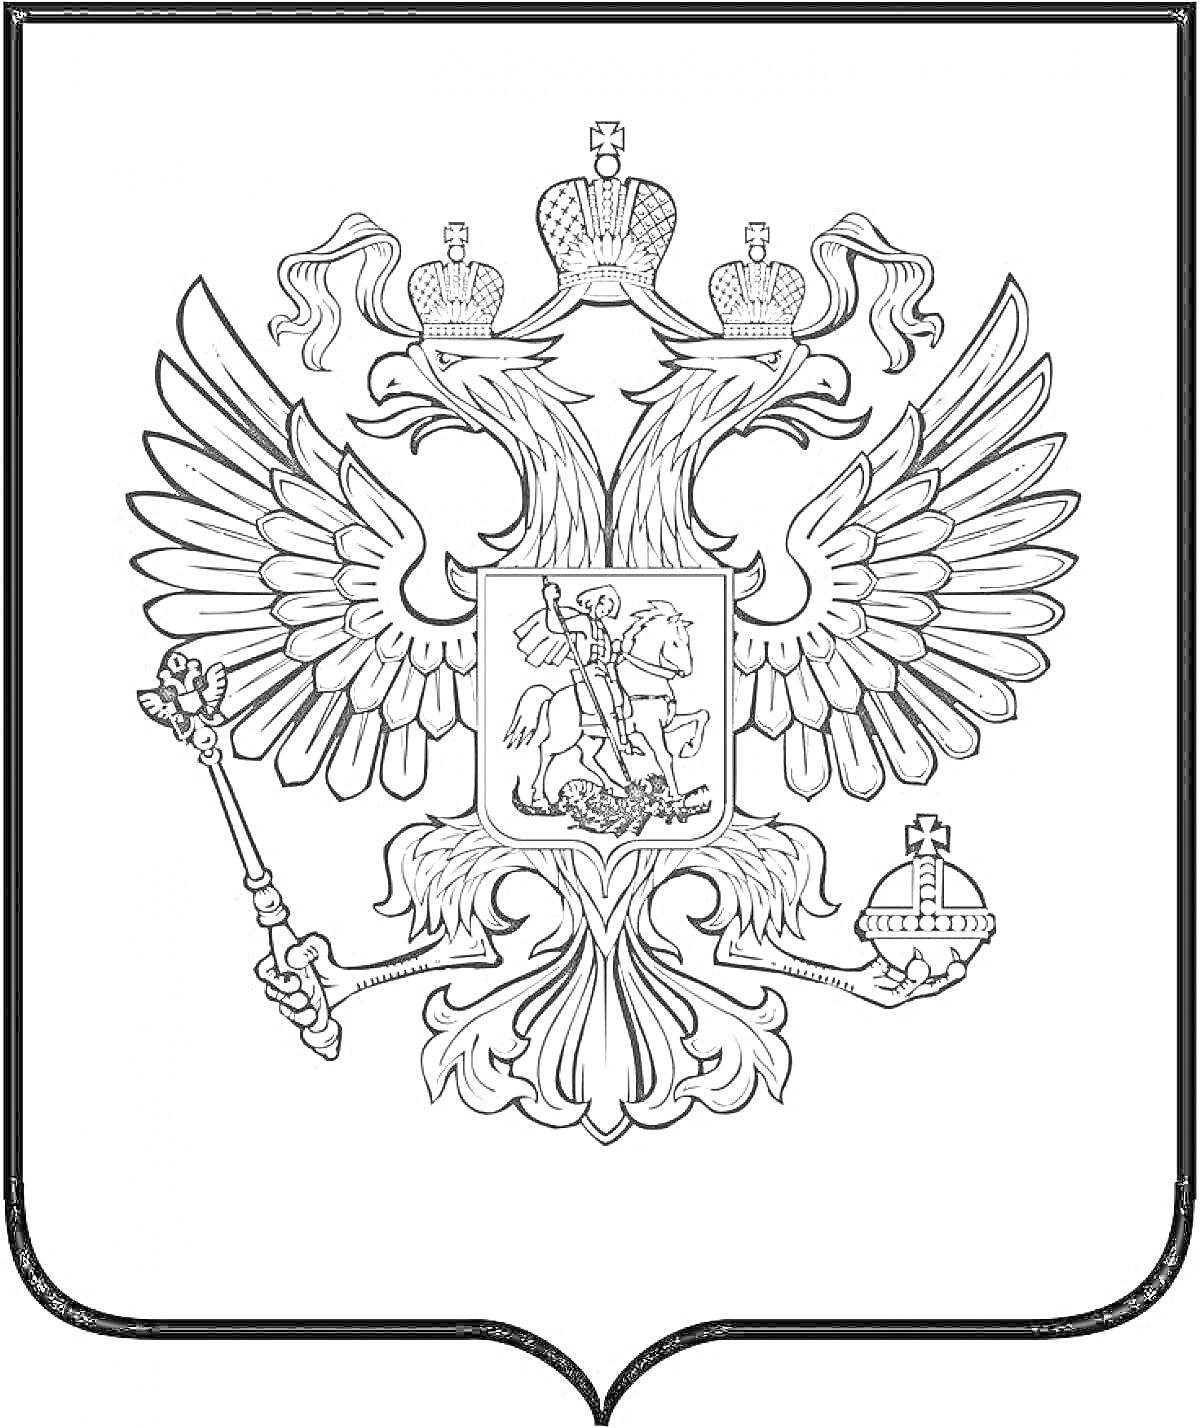 Раскраска Герб России с двуглавым орлом, тремя коронами, скипетром и державой, в центре изображение всадника, поражающего дракона